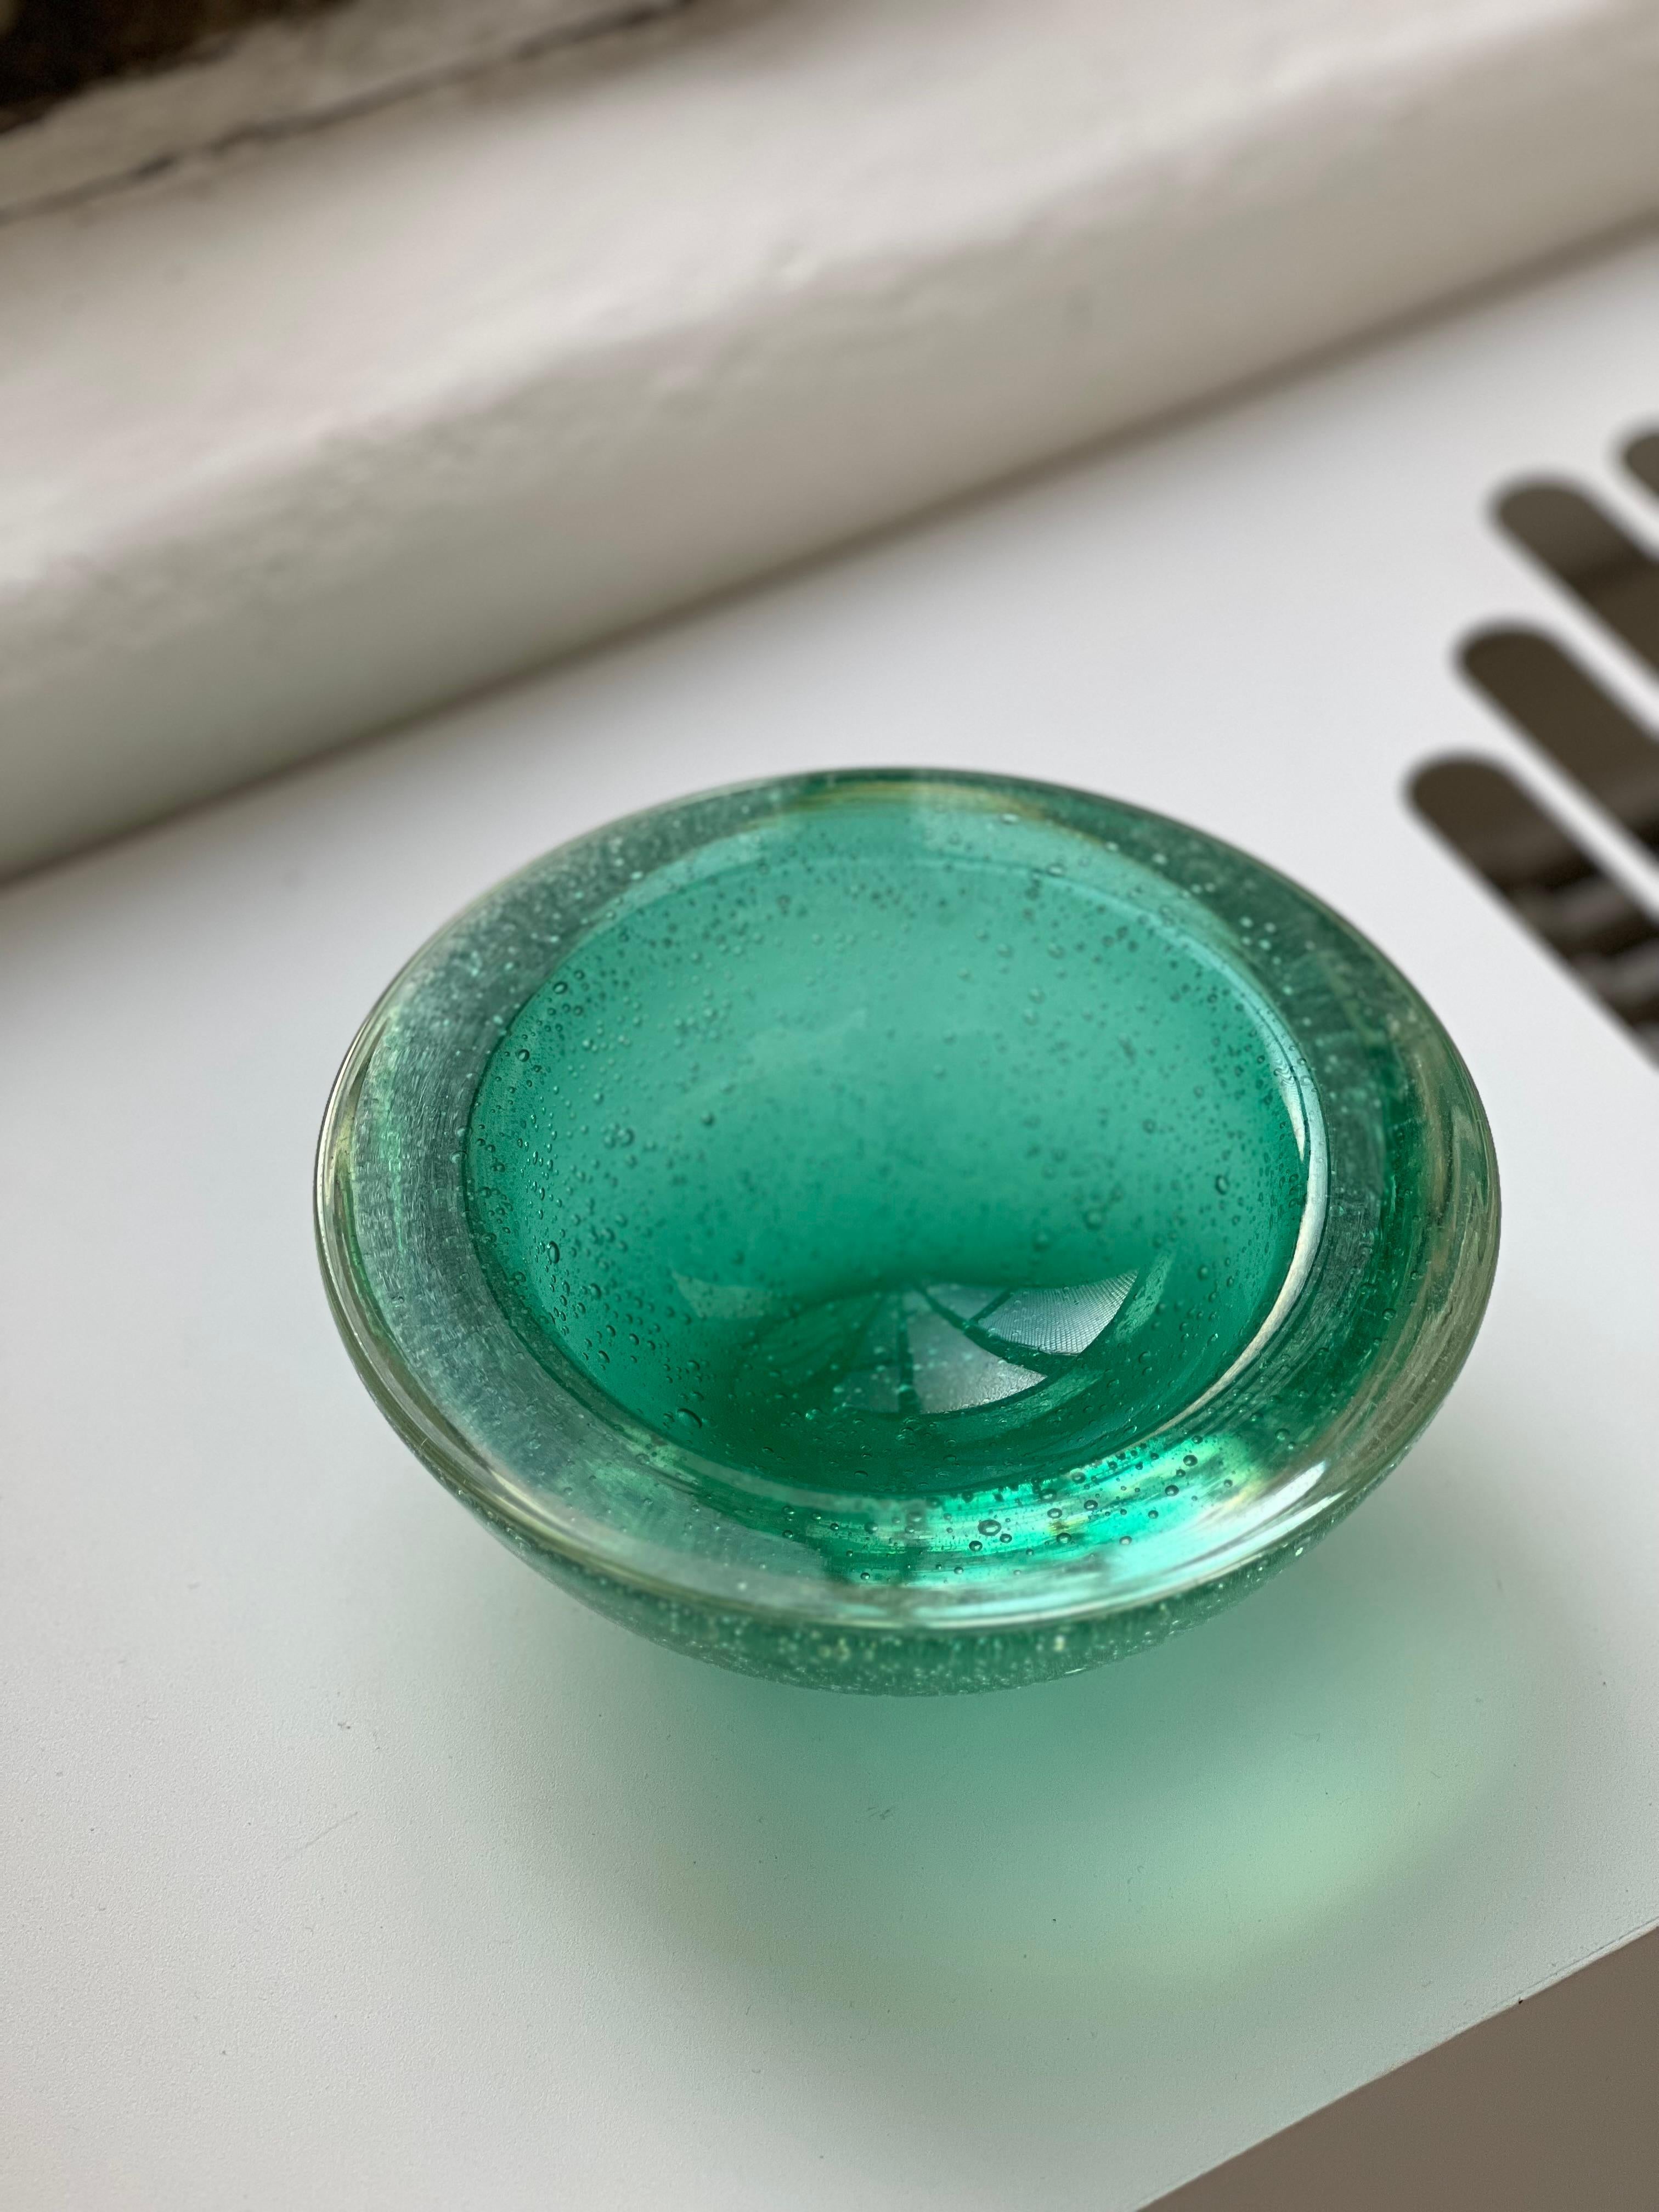 Verre épais de Murano - Bol décoratif en verre - Bullicante Murano Glass

Belle coupe décorative en verre épais de Murano, dans une teinte vibrante de vert aigue-marine, avec bulles incluses. Cette technique, qui consiste à souffler de minuscules